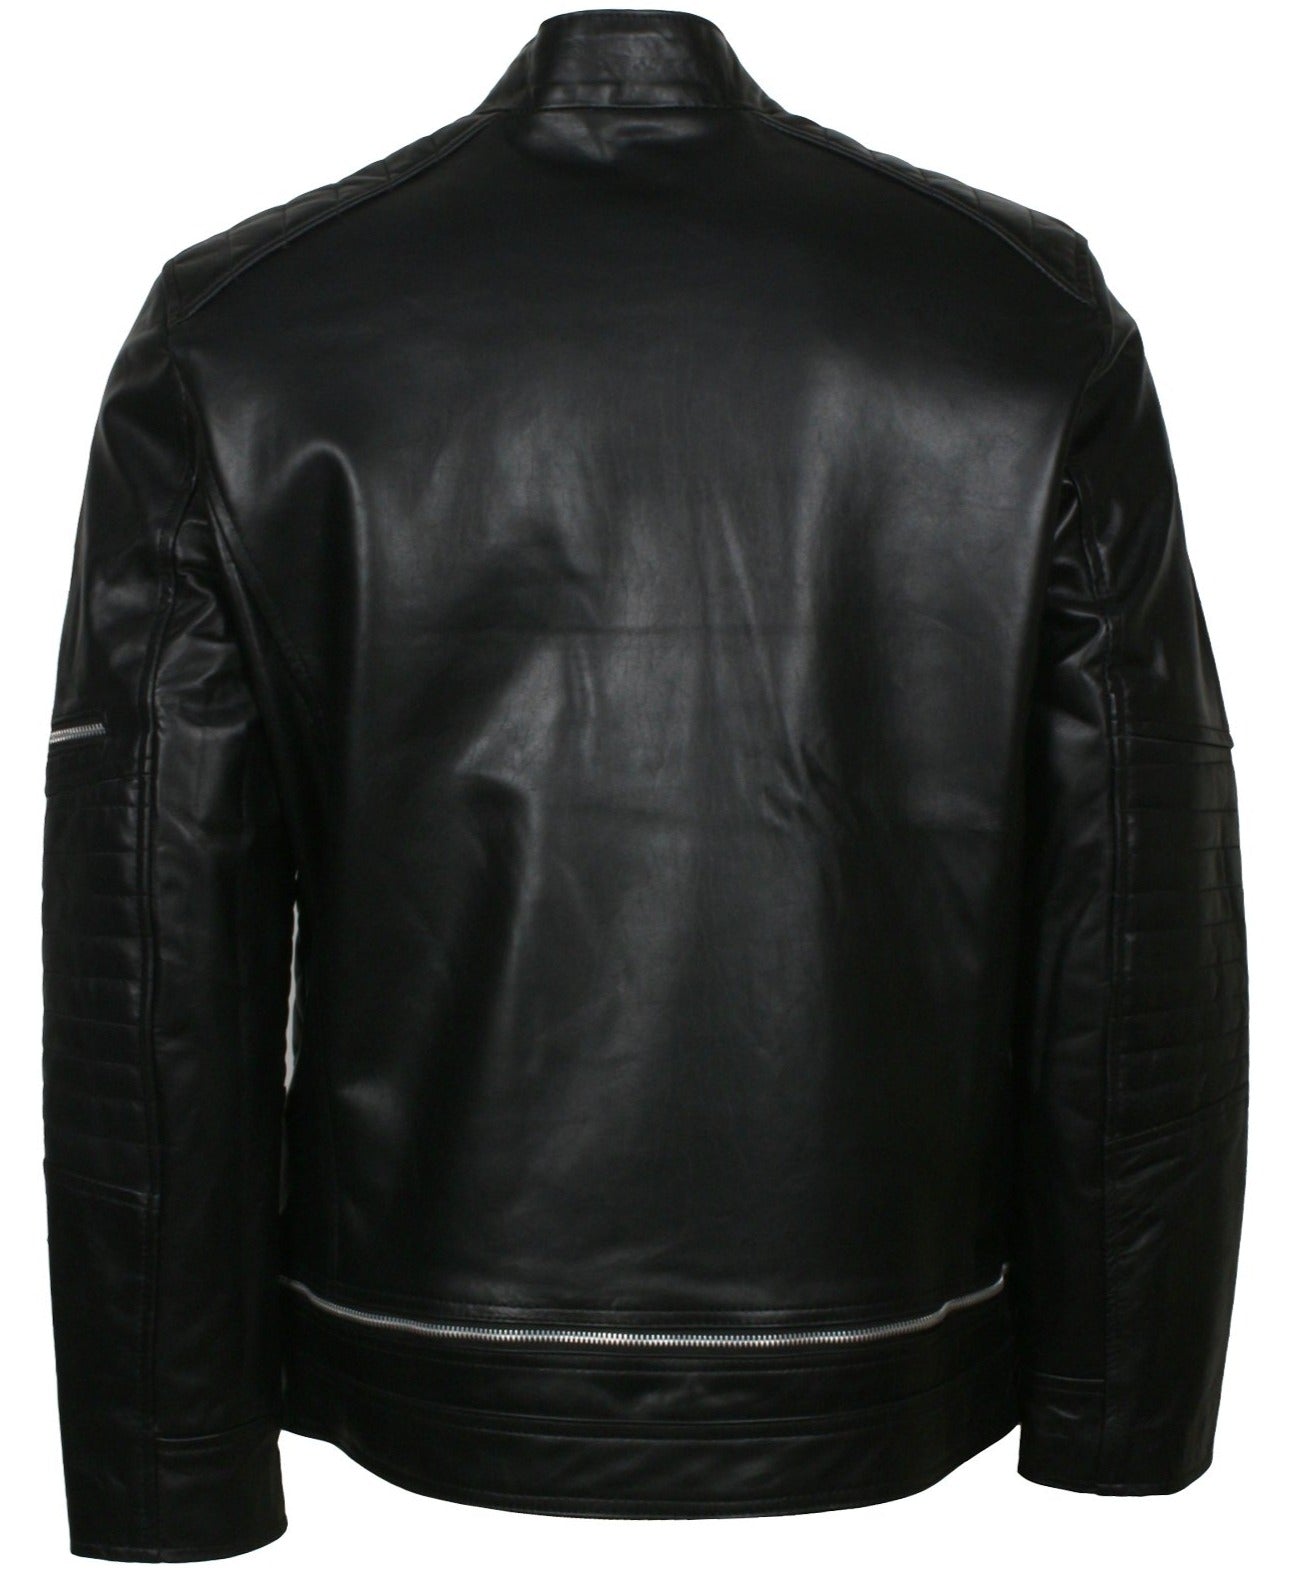 Mens Black Leather Biker Jacket